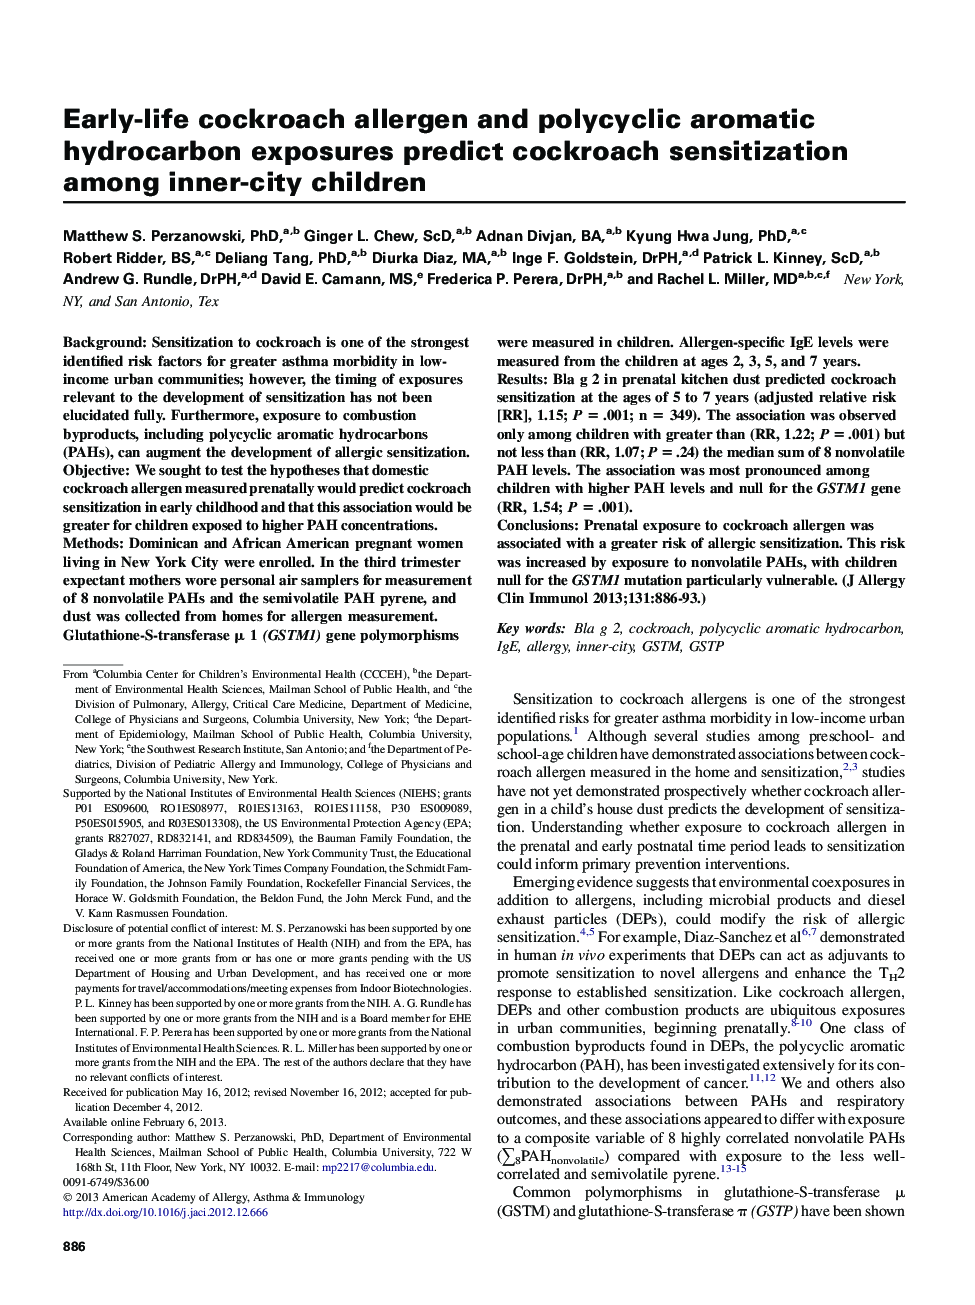 مکانیسم های آلرژی و ایمنولوژی بالینی آلرژن سوسک و آلرژن های هیدروکربنی آروماتیک چند حلقه ای در طول زندگی، حساسیت سوسری را در میان کودکان درون شهر پیش بینی می کنند 